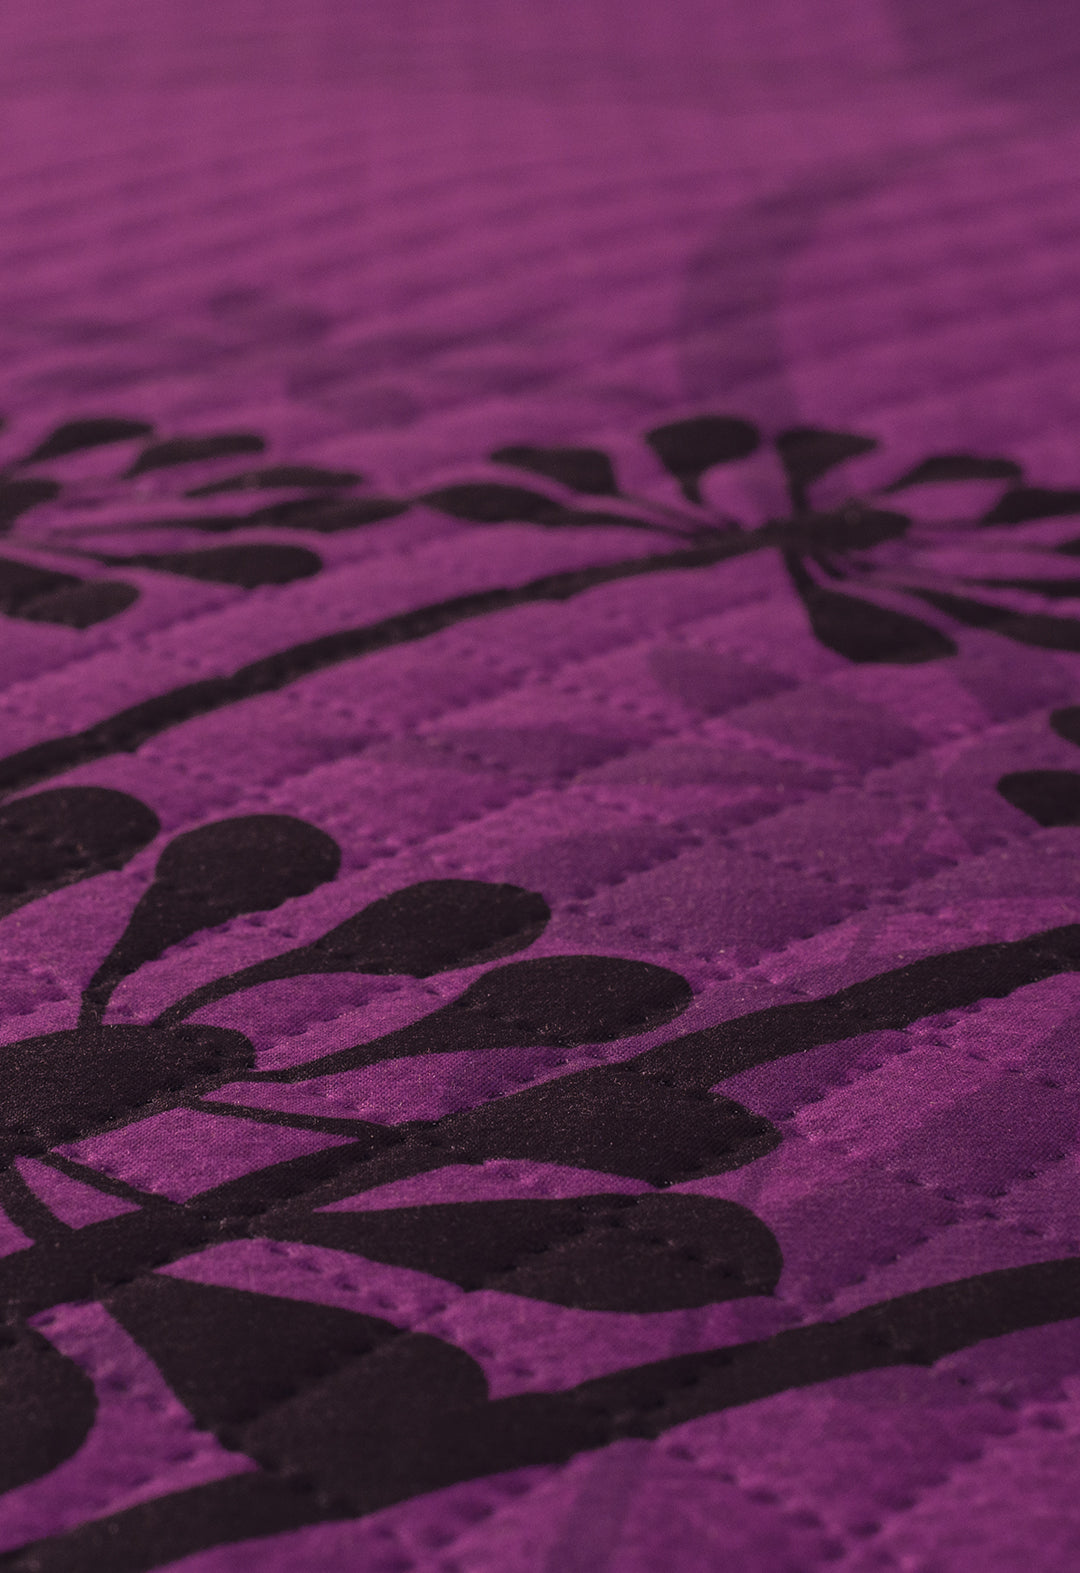 El Coordinado de Colcha Hotelera Violeta, es un completo juego de tonos violeta y un hermosos diseños de dientes de leon.